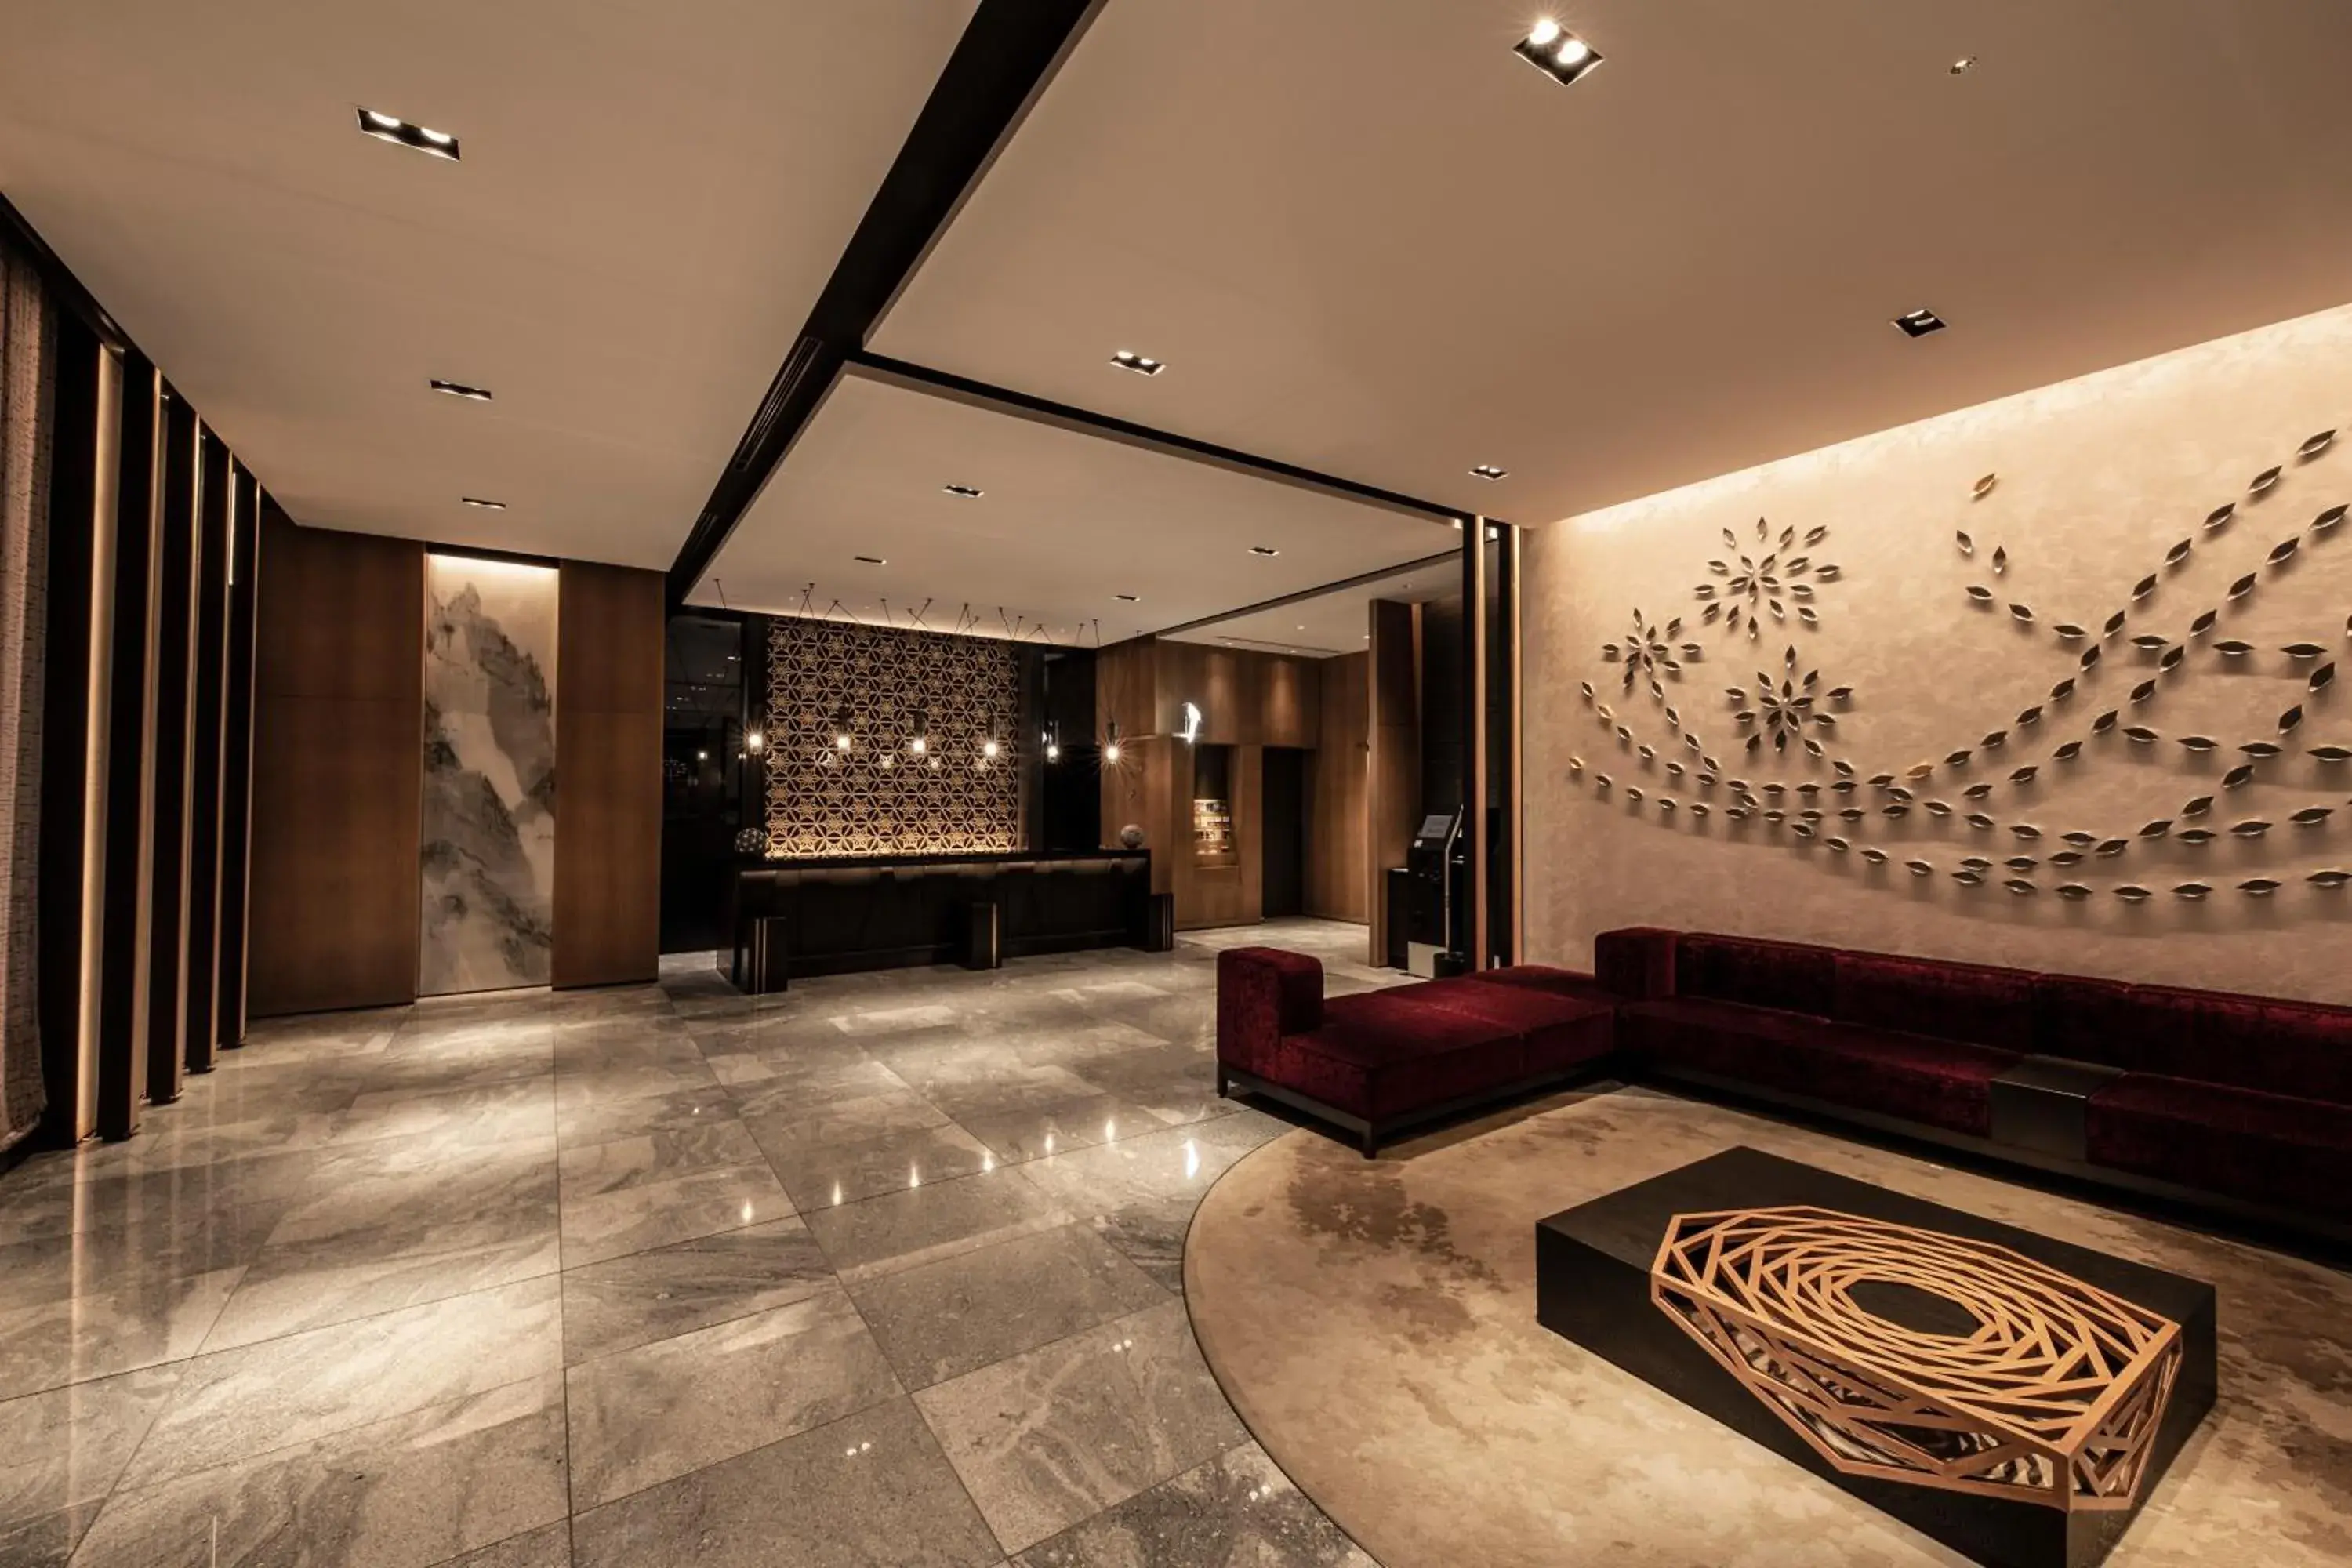 Lobby or reception, Lobby/Reception in The Royal Park Hotel Kyoto Shijo